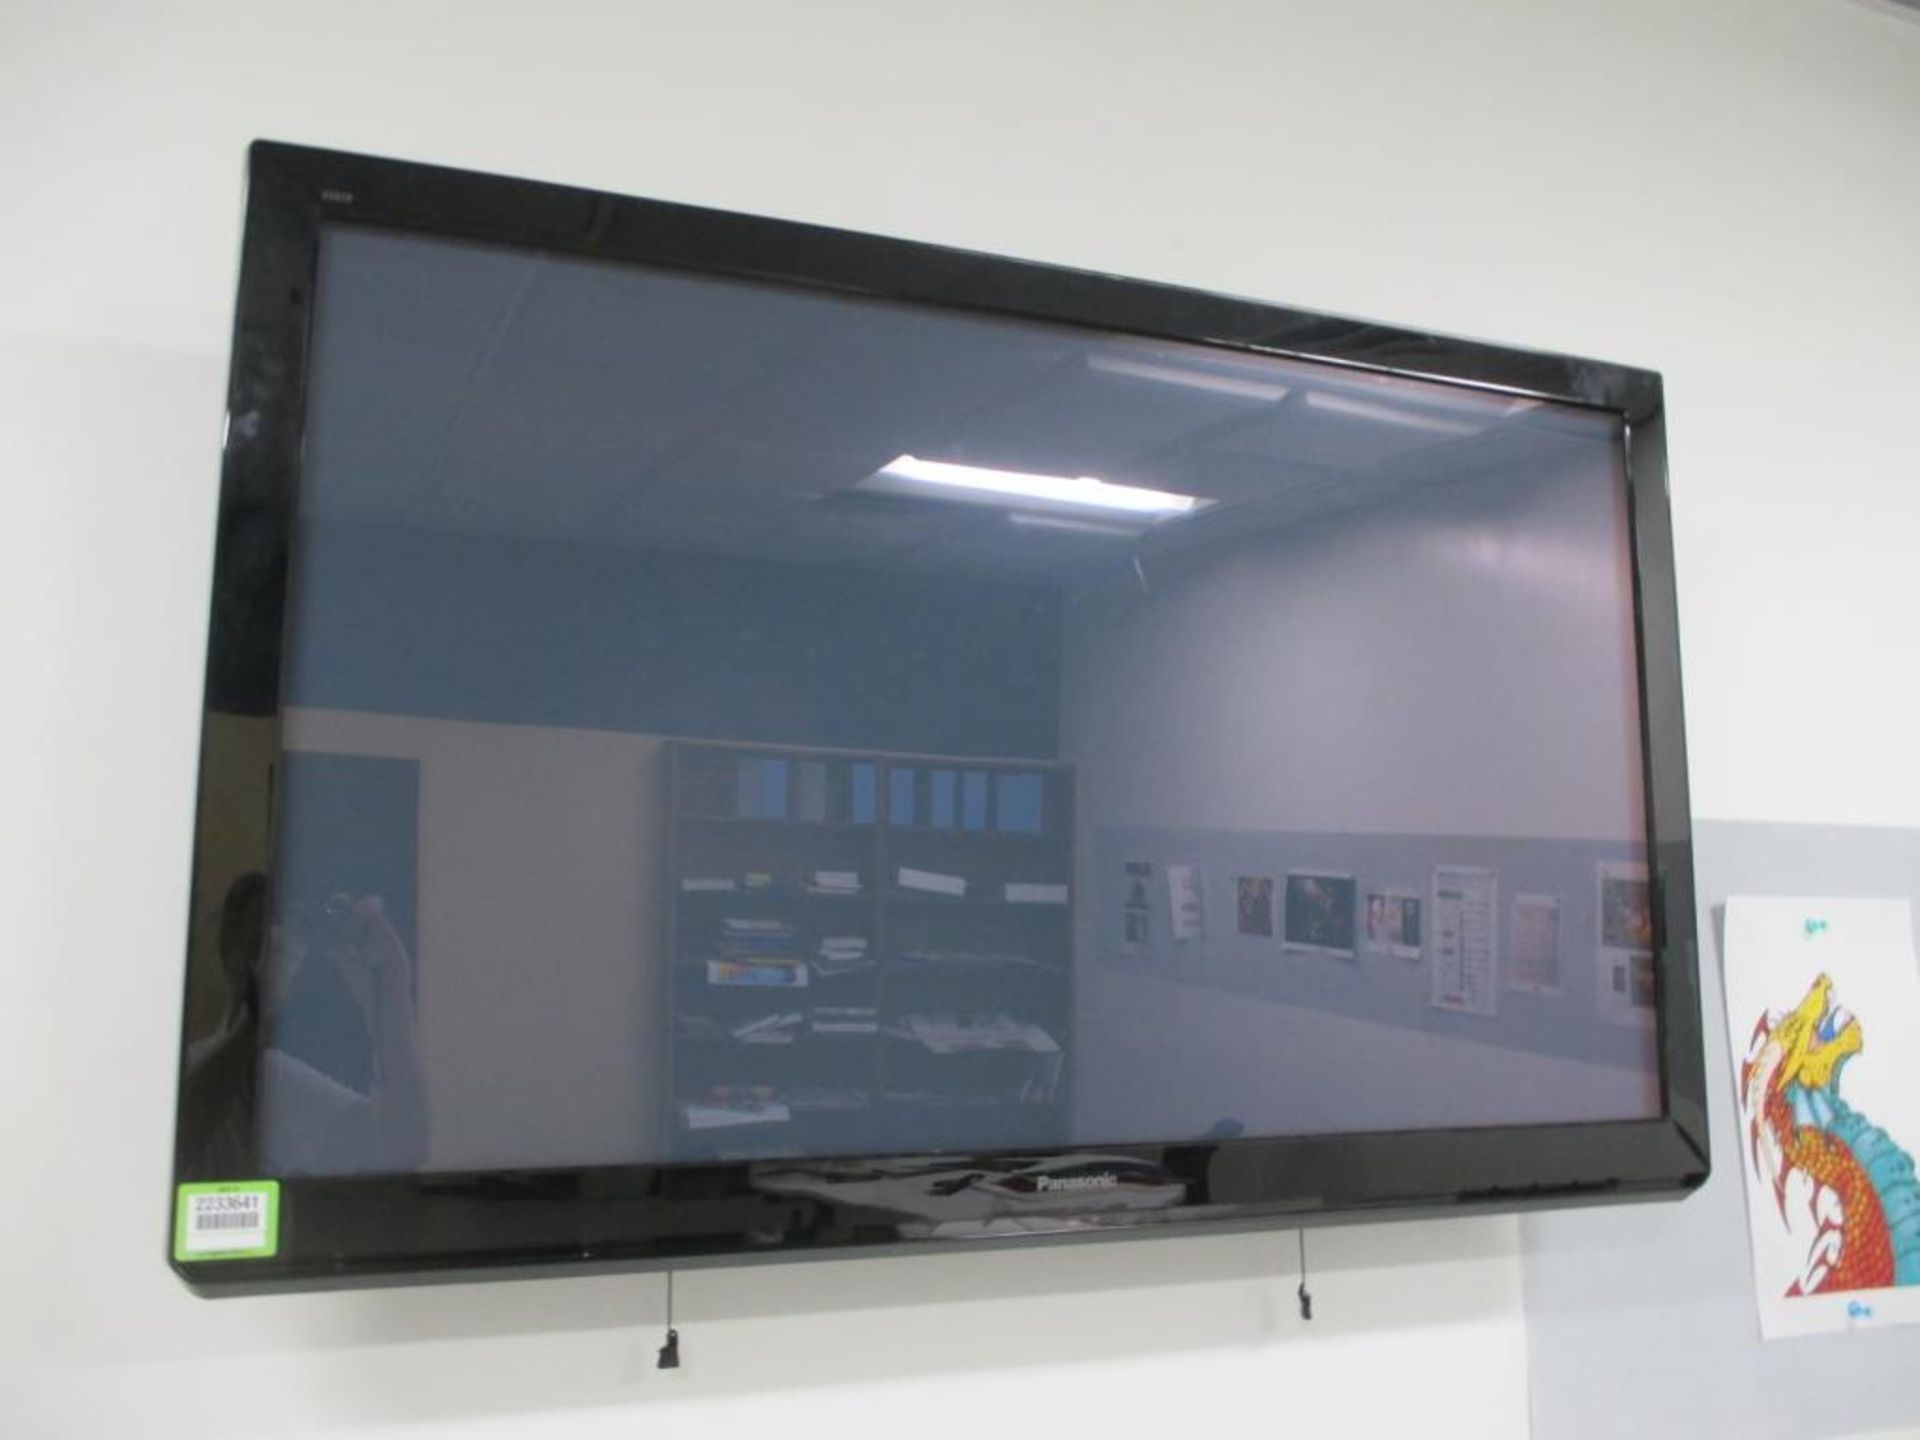 LCD TV Monitor